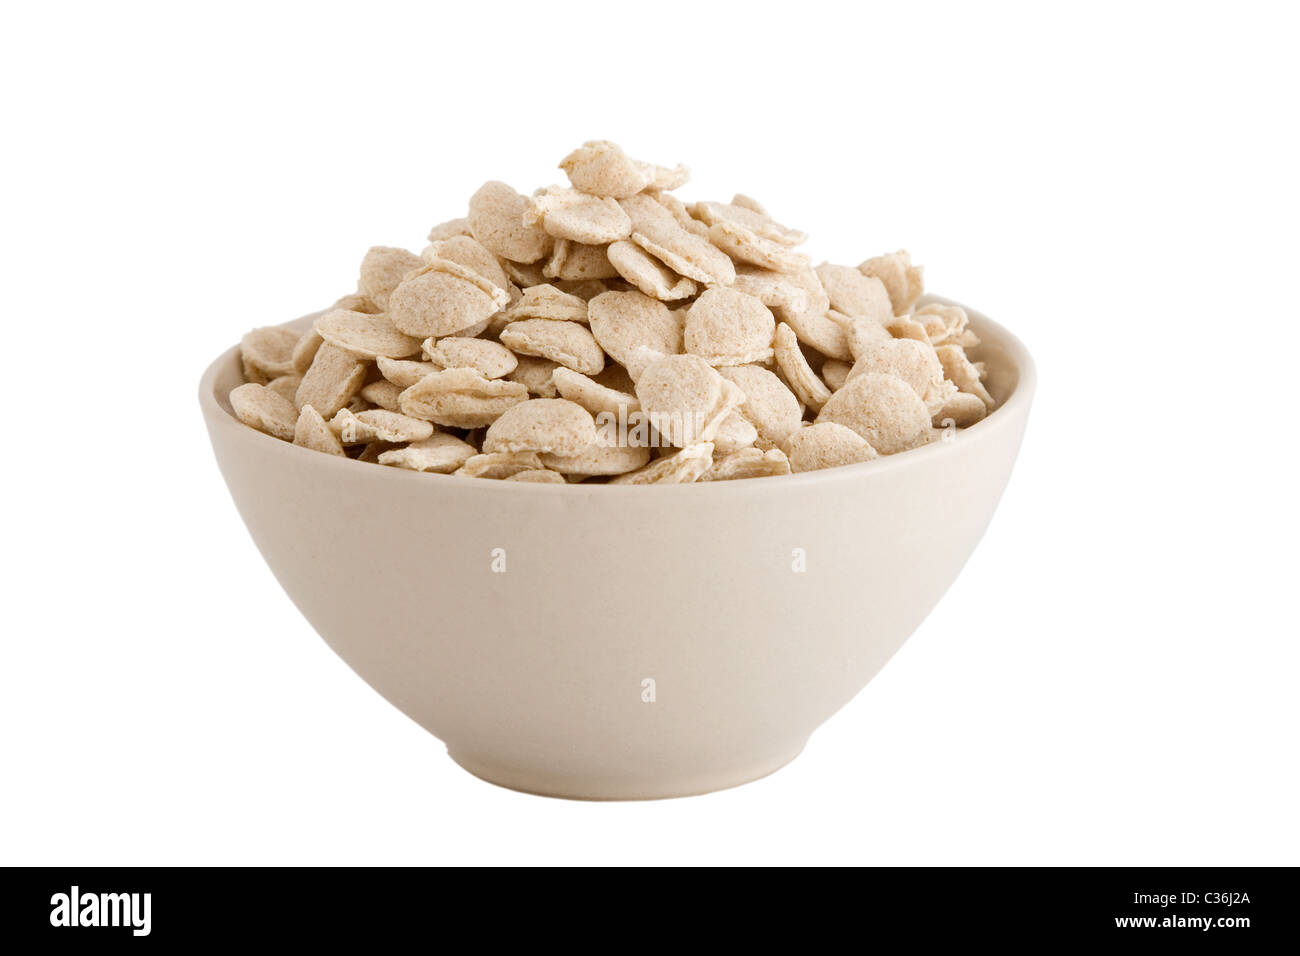 Vista frontal del tazón de cereales sobre fondo blanco. Foto de stock